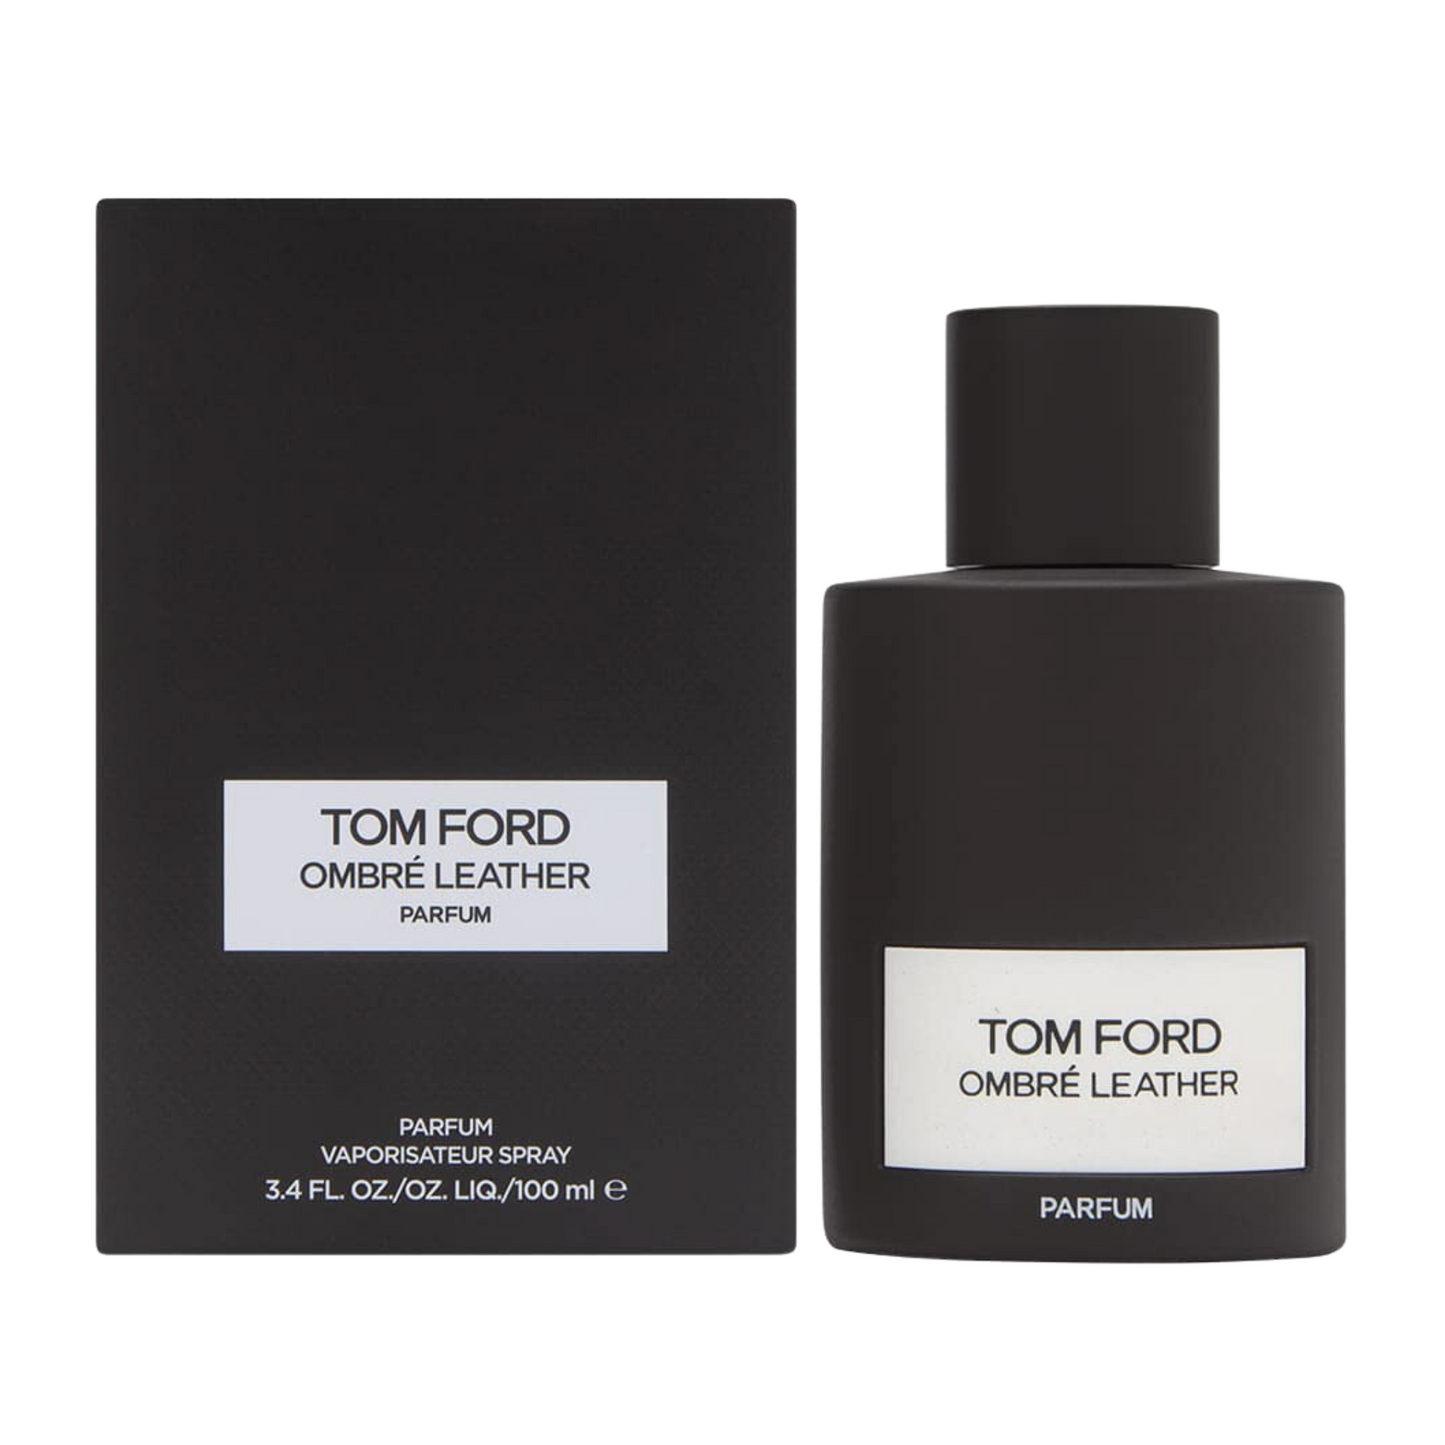 Perfume TOM FORD OMBRÉ LEATHER PARFUM 100ml